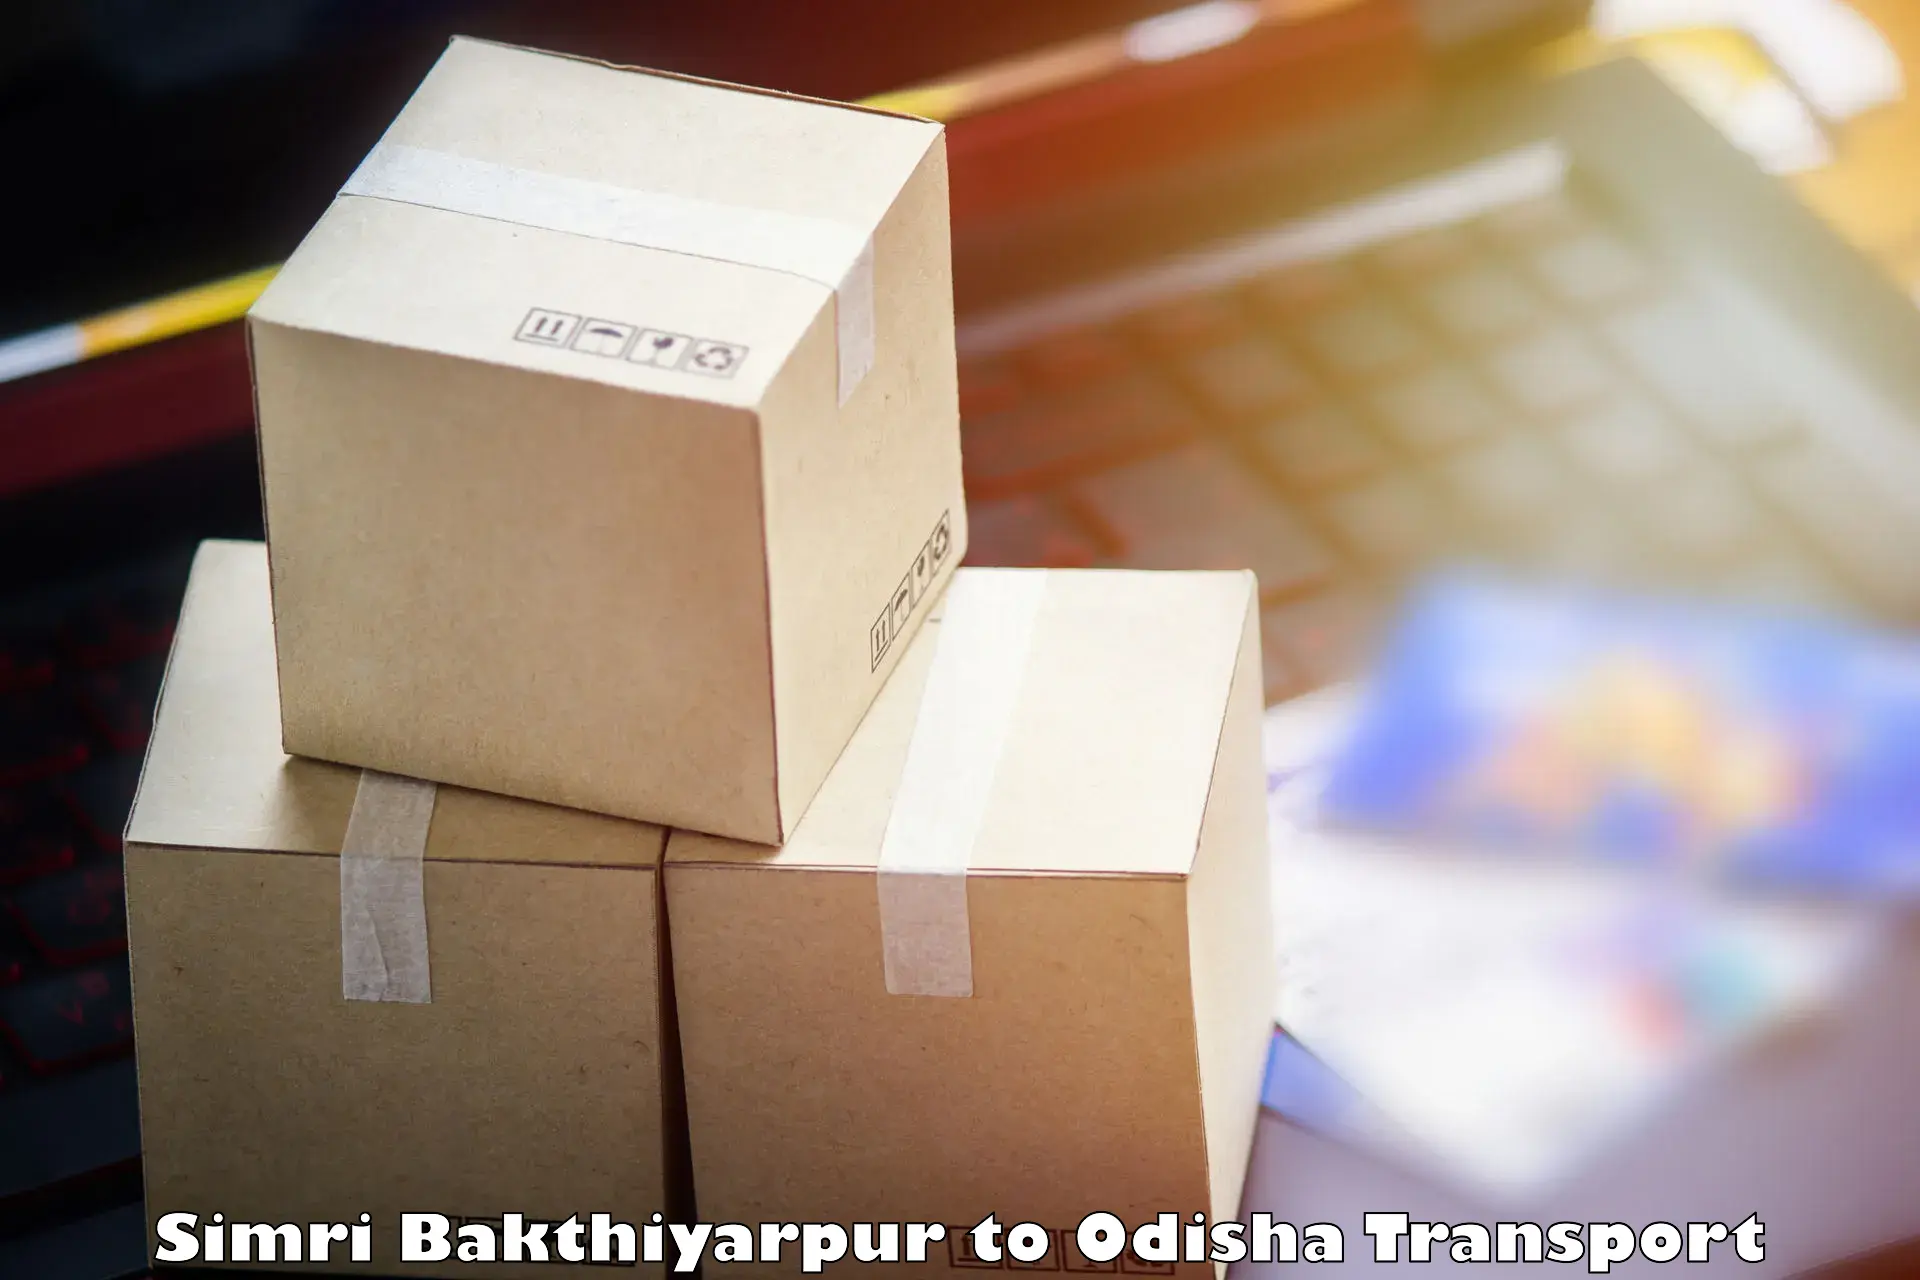 Two wheeler parcel service Simri Bakthiyarpur to Bargarh